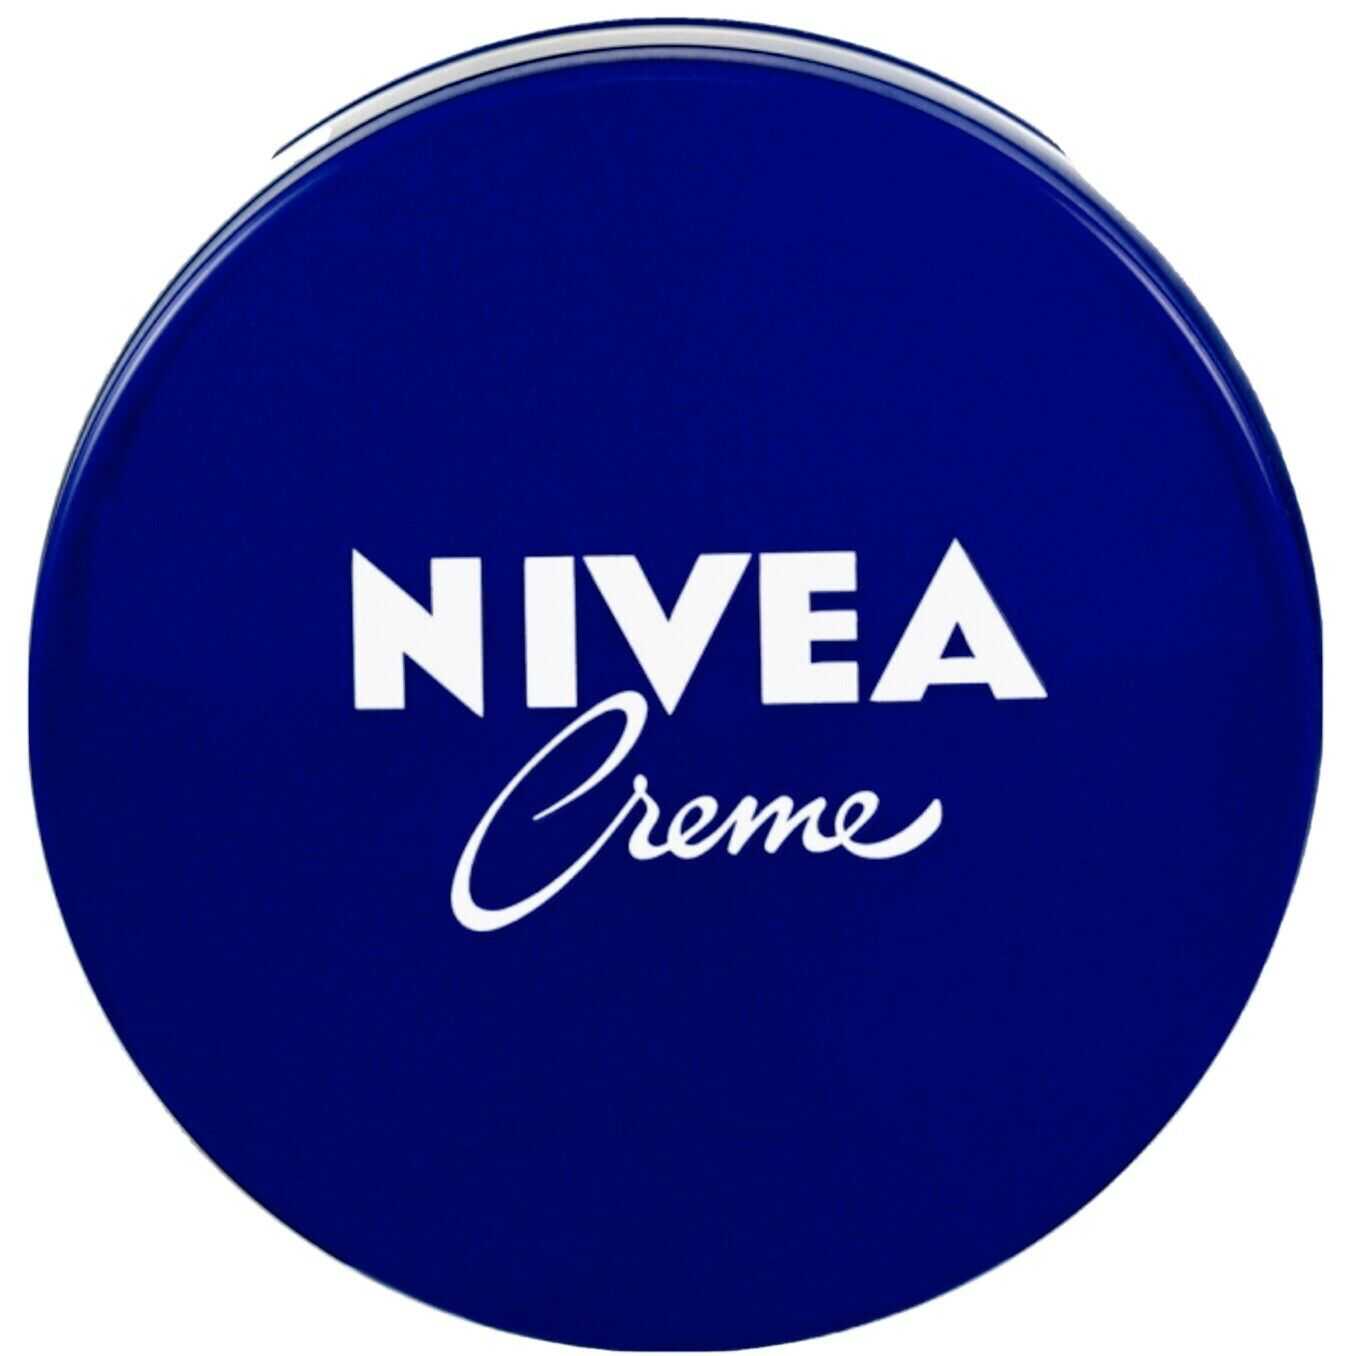 Анализируем состав легендарного крема Nivea в синей баночке